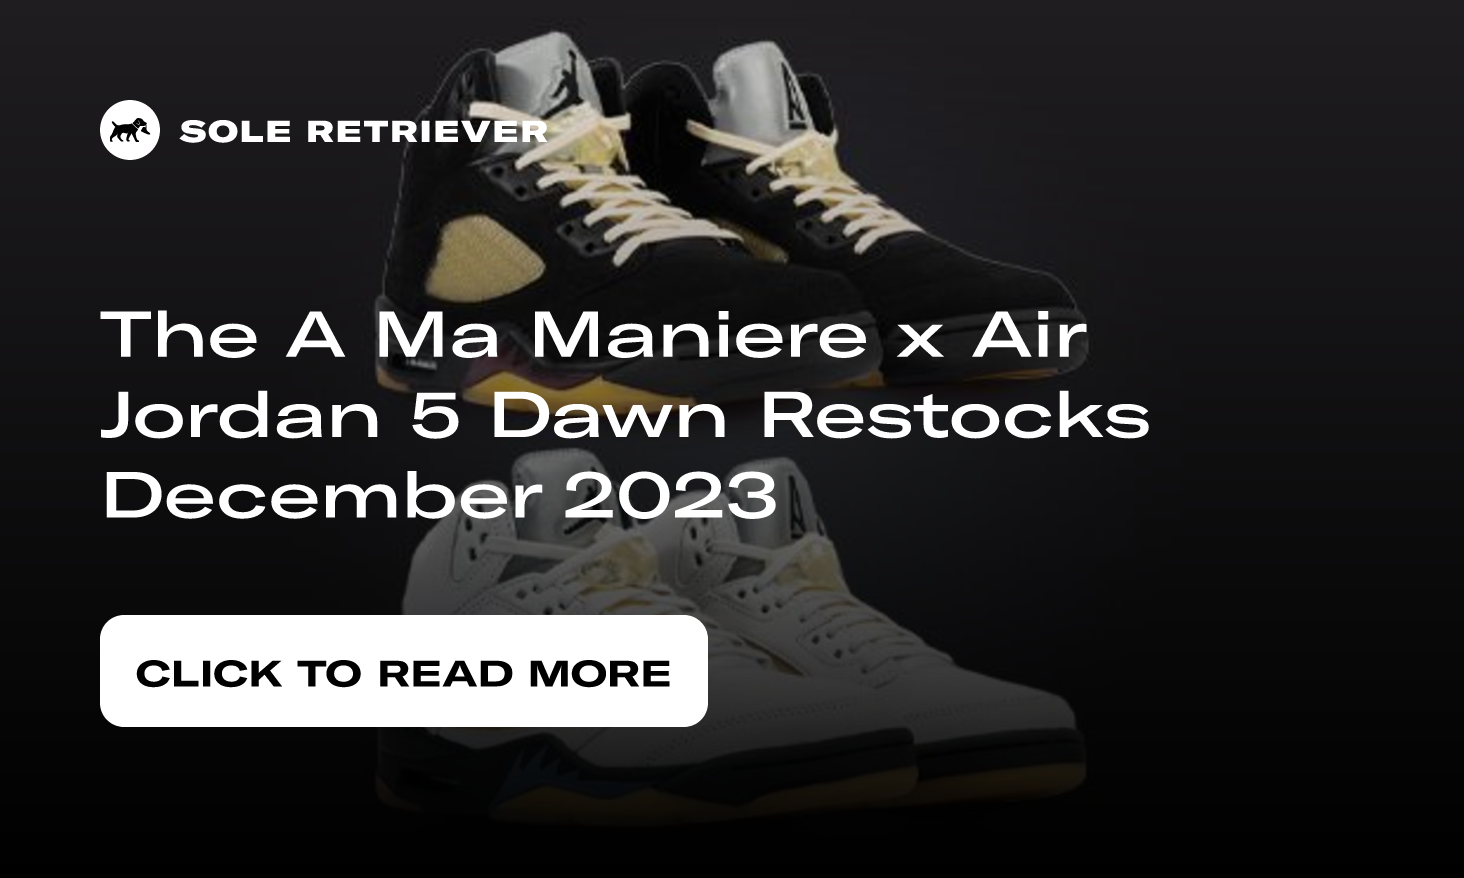 A Ma Maniere x Air Jordan 5 Release Date